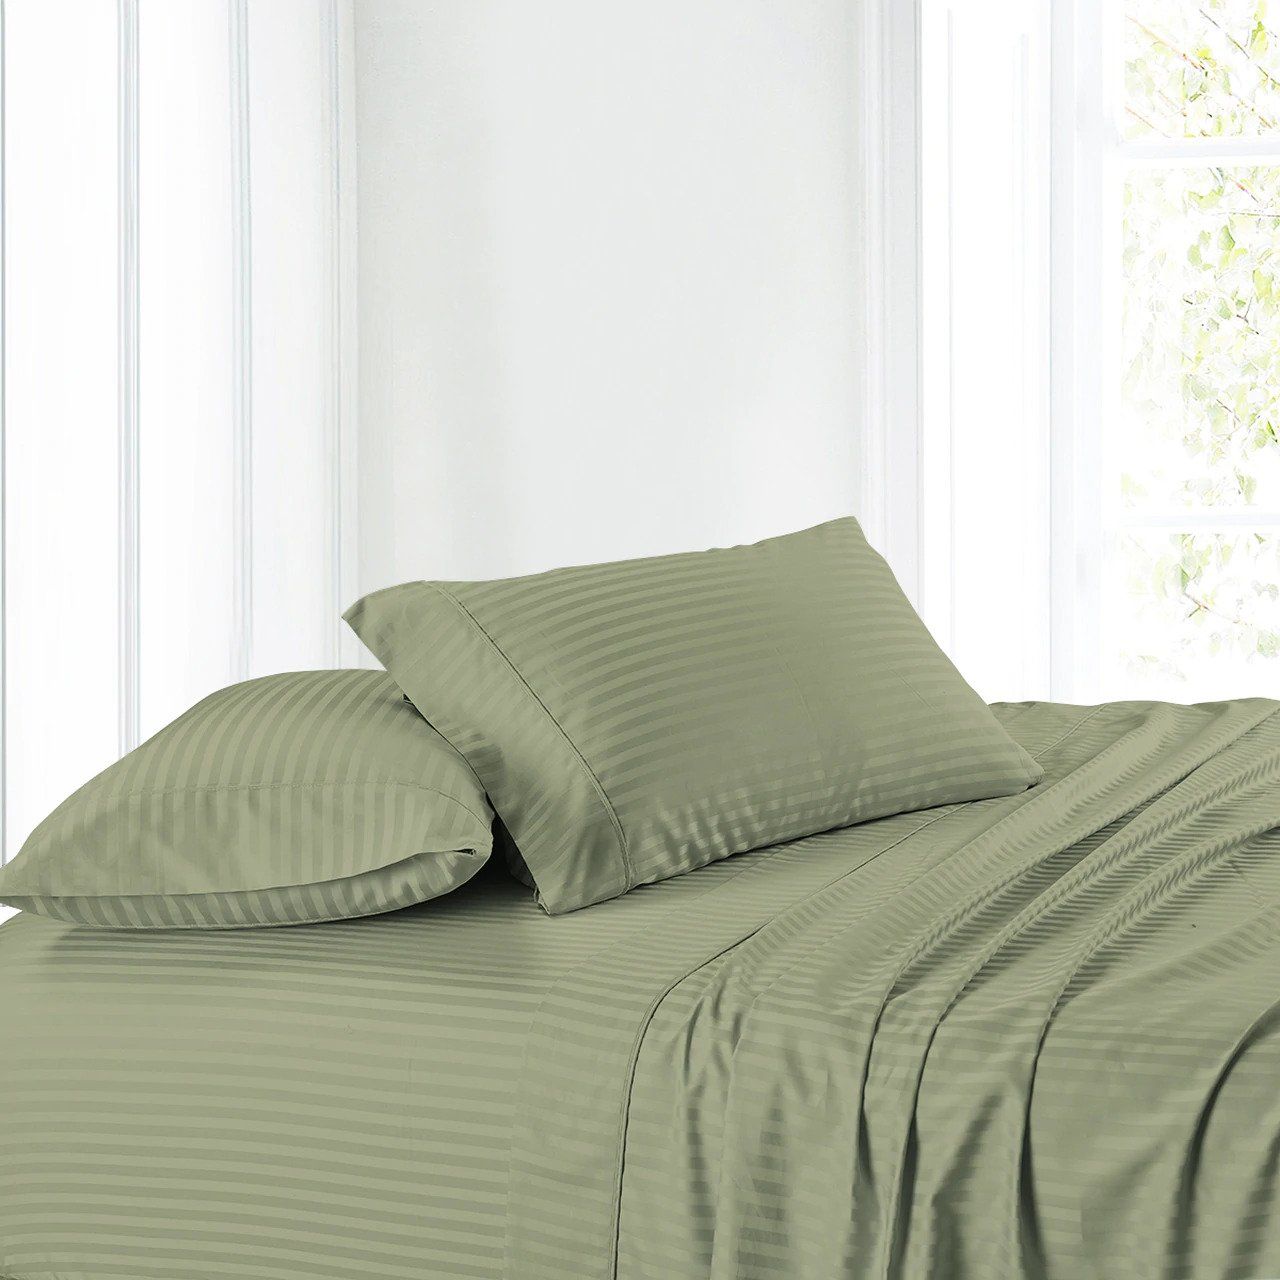 Shop Olive Duvet Cotton King Size Bedding Set, 220 X 240 cm, 6 Pcs